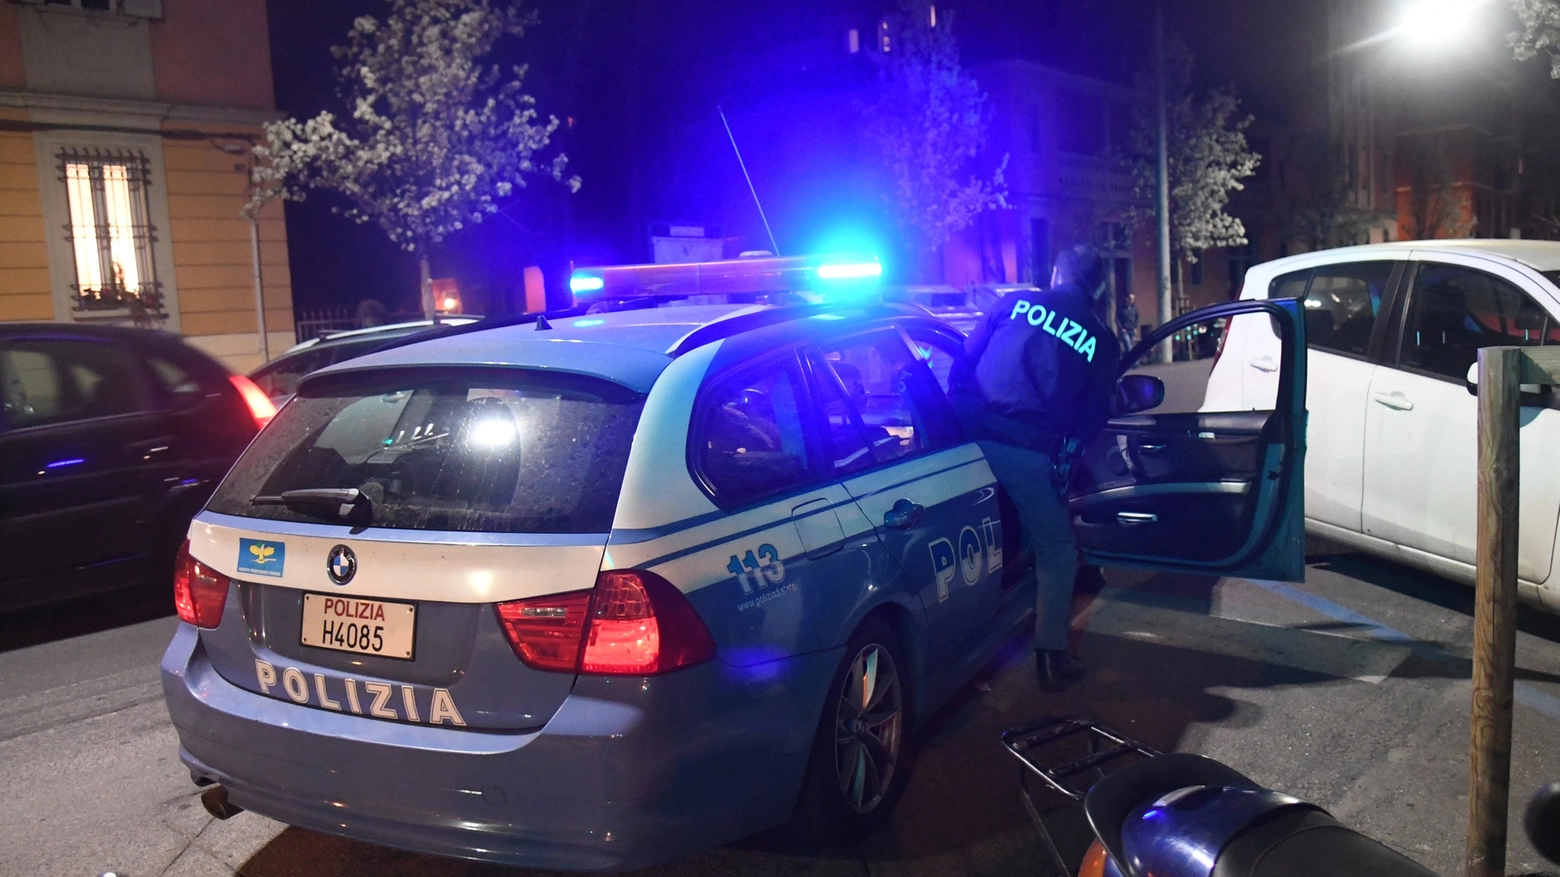 La polizia in via Nicolò dall'Arca (foto Schicchi)